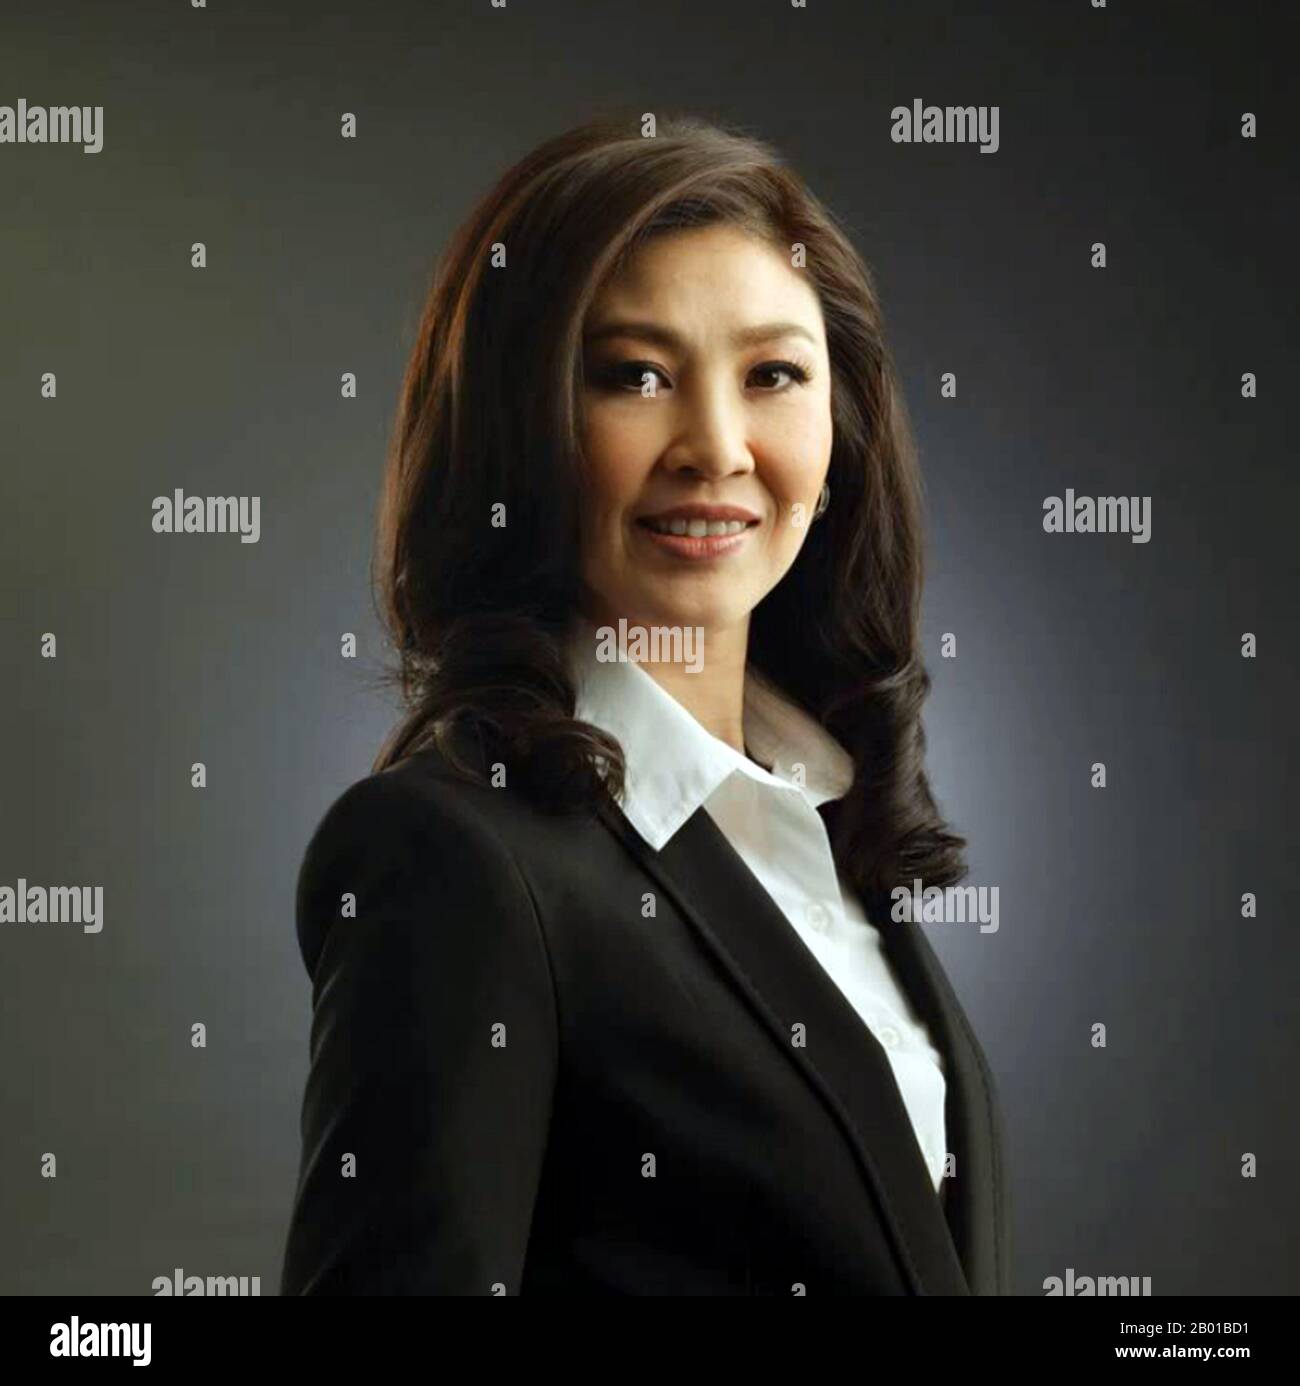 Thailand: Yingluck Shinawatra (geboren am 21. Juni 1967), Premierminister von Thailand (2011-2014). Foto von Tarasaphorn (CC BY-SA 3,0 Lizenz), 2011. Yingluck Shinawatra (RTGS: Yinglak Chinnawat) ist eine thailändische Politikerin, Galionsfigur der Phebu Thai Party und ehemalige Premierministerin Thailands von 2011 bis zu ihrer Amtsenthebung am 2014 durch das Verfassungsgericht. Sie wurde 2016 wegen Machtmissbrauchs vor Gericht gestellt und 2017, nachdem sie aus dem Land geflohen war, in Abwesenheit für schuldig befunden, wobei ein Haftbefehl erlassen wurde. Es wird angenommen, dass sie jetzt in London ist. Stockfoto